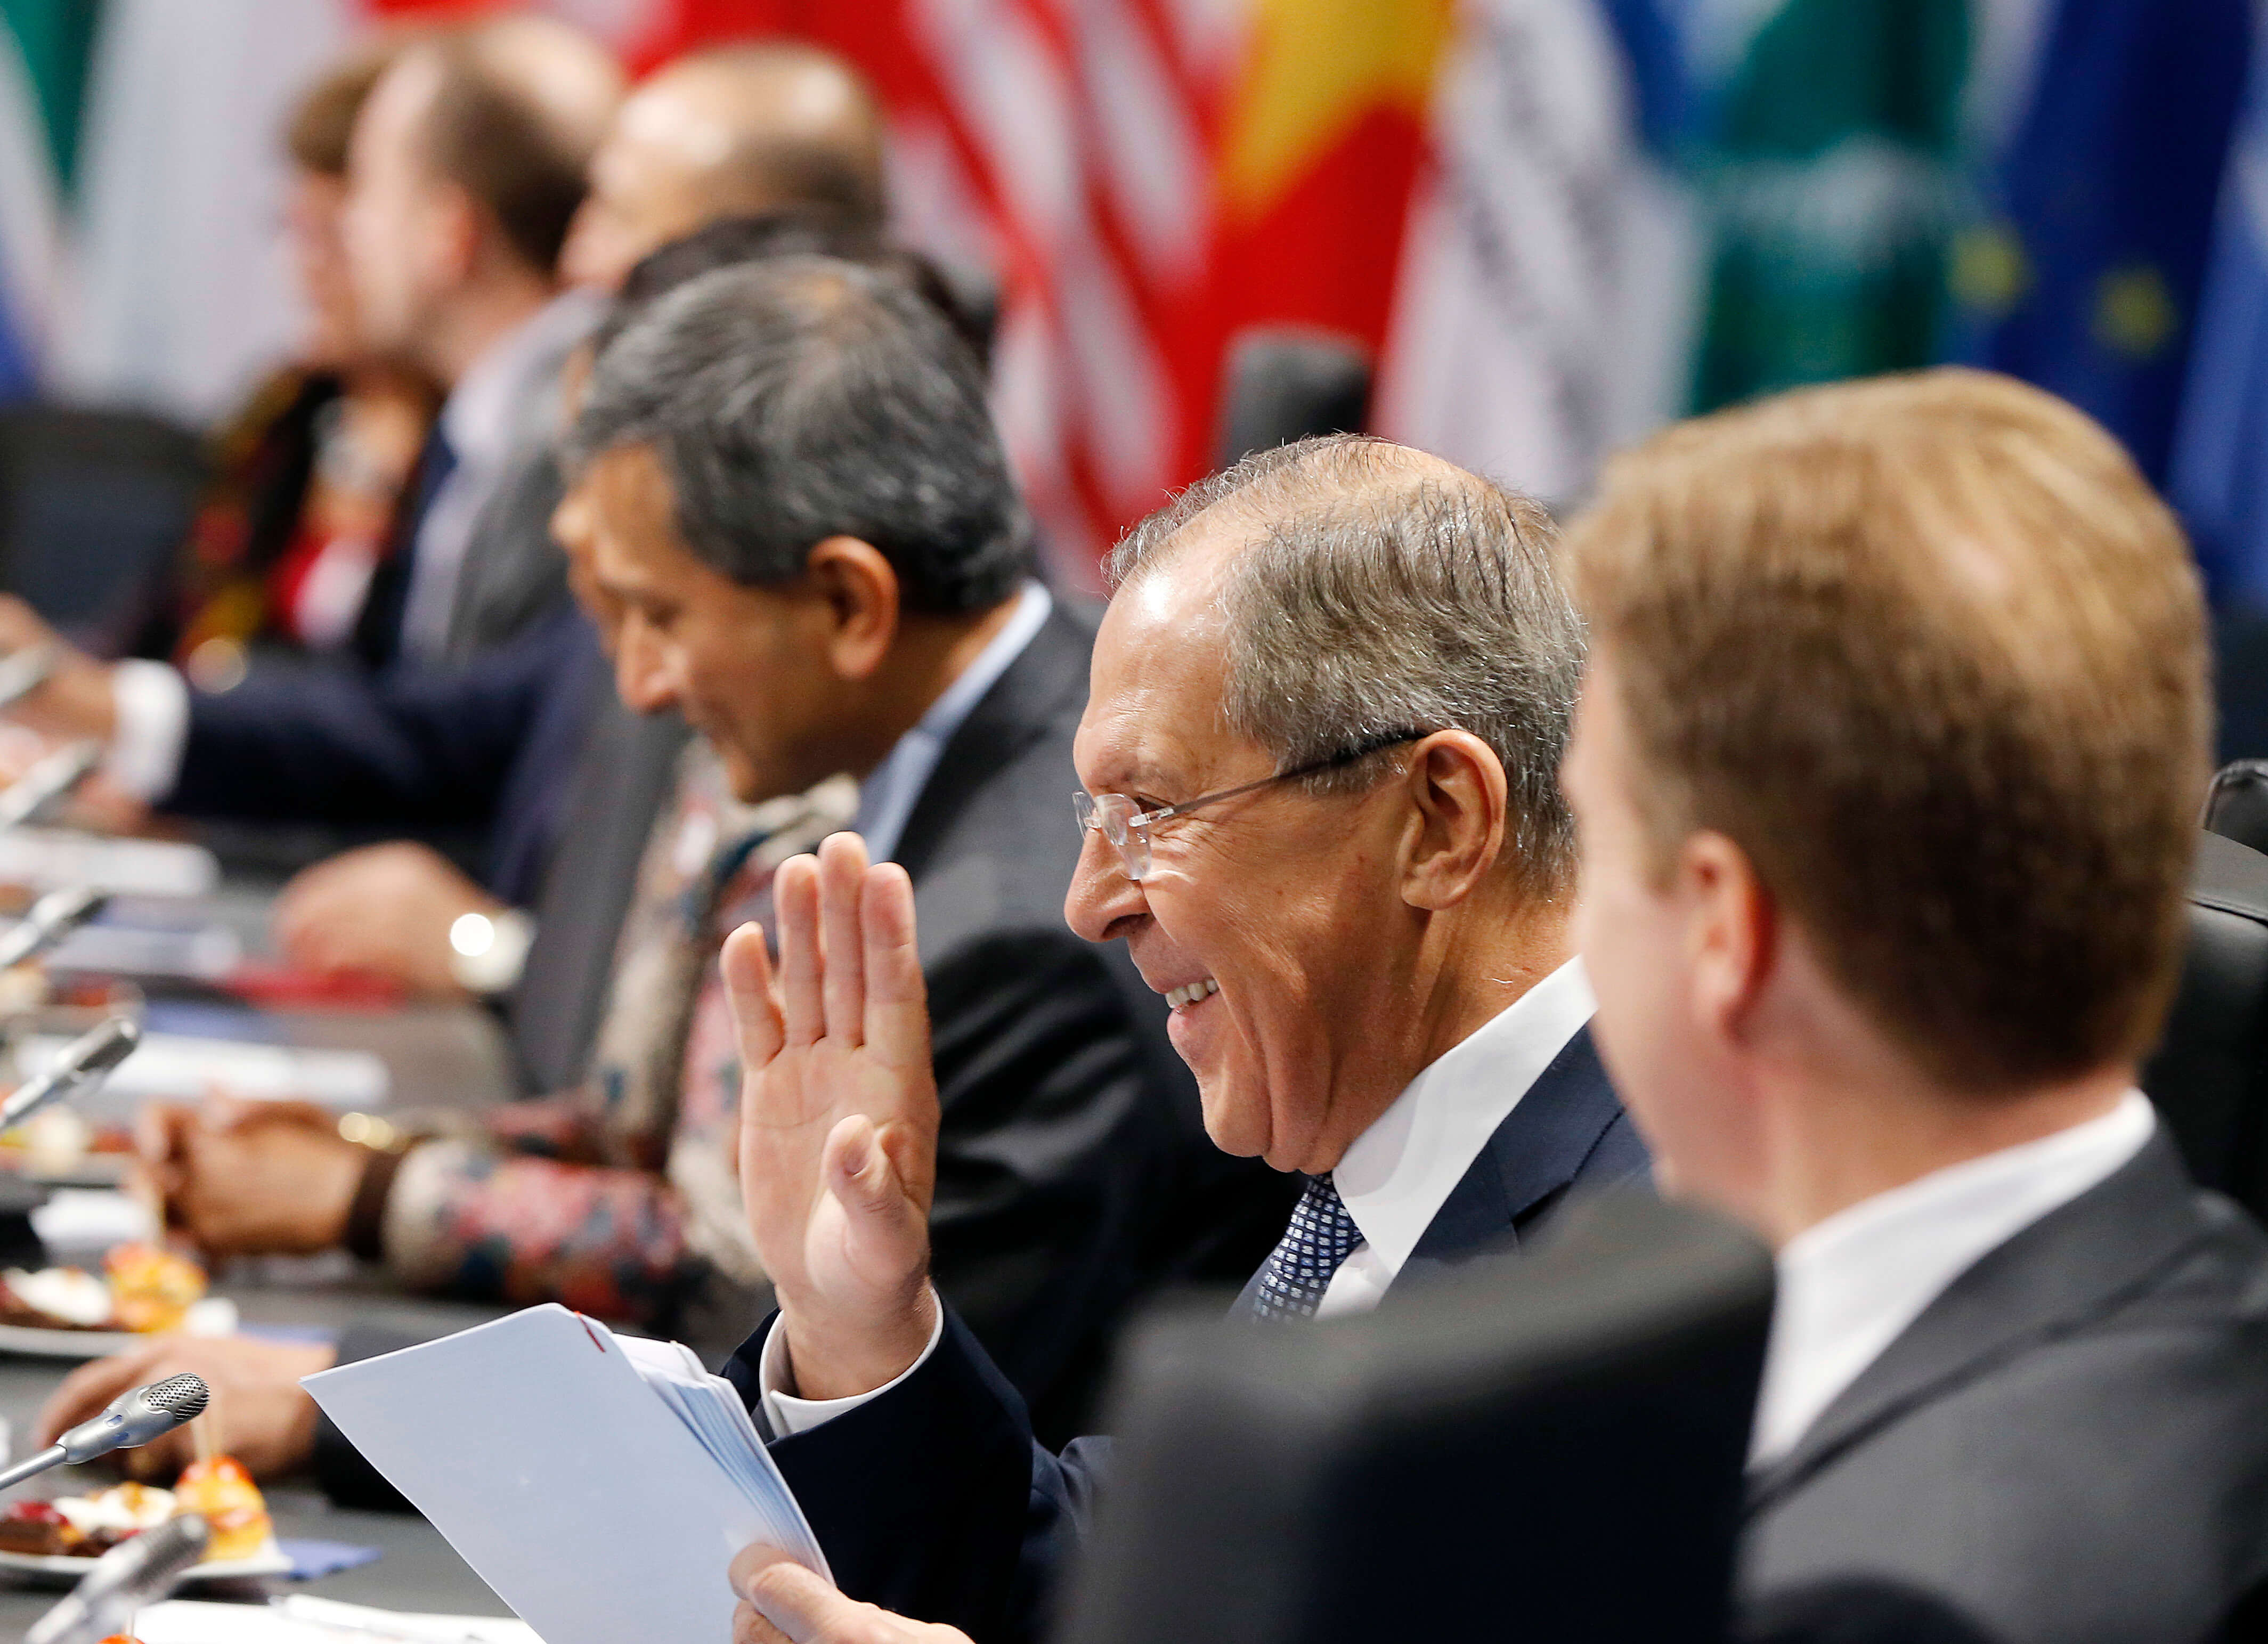 El ministro de Relaciones Exteriores de Rusia, Serguéi Lavrov, durante una sesión de trabajo en el segundo día de la reunión de Ministros de Relaciones Exteriores del G-20 en Bonn, Alemania (AP)